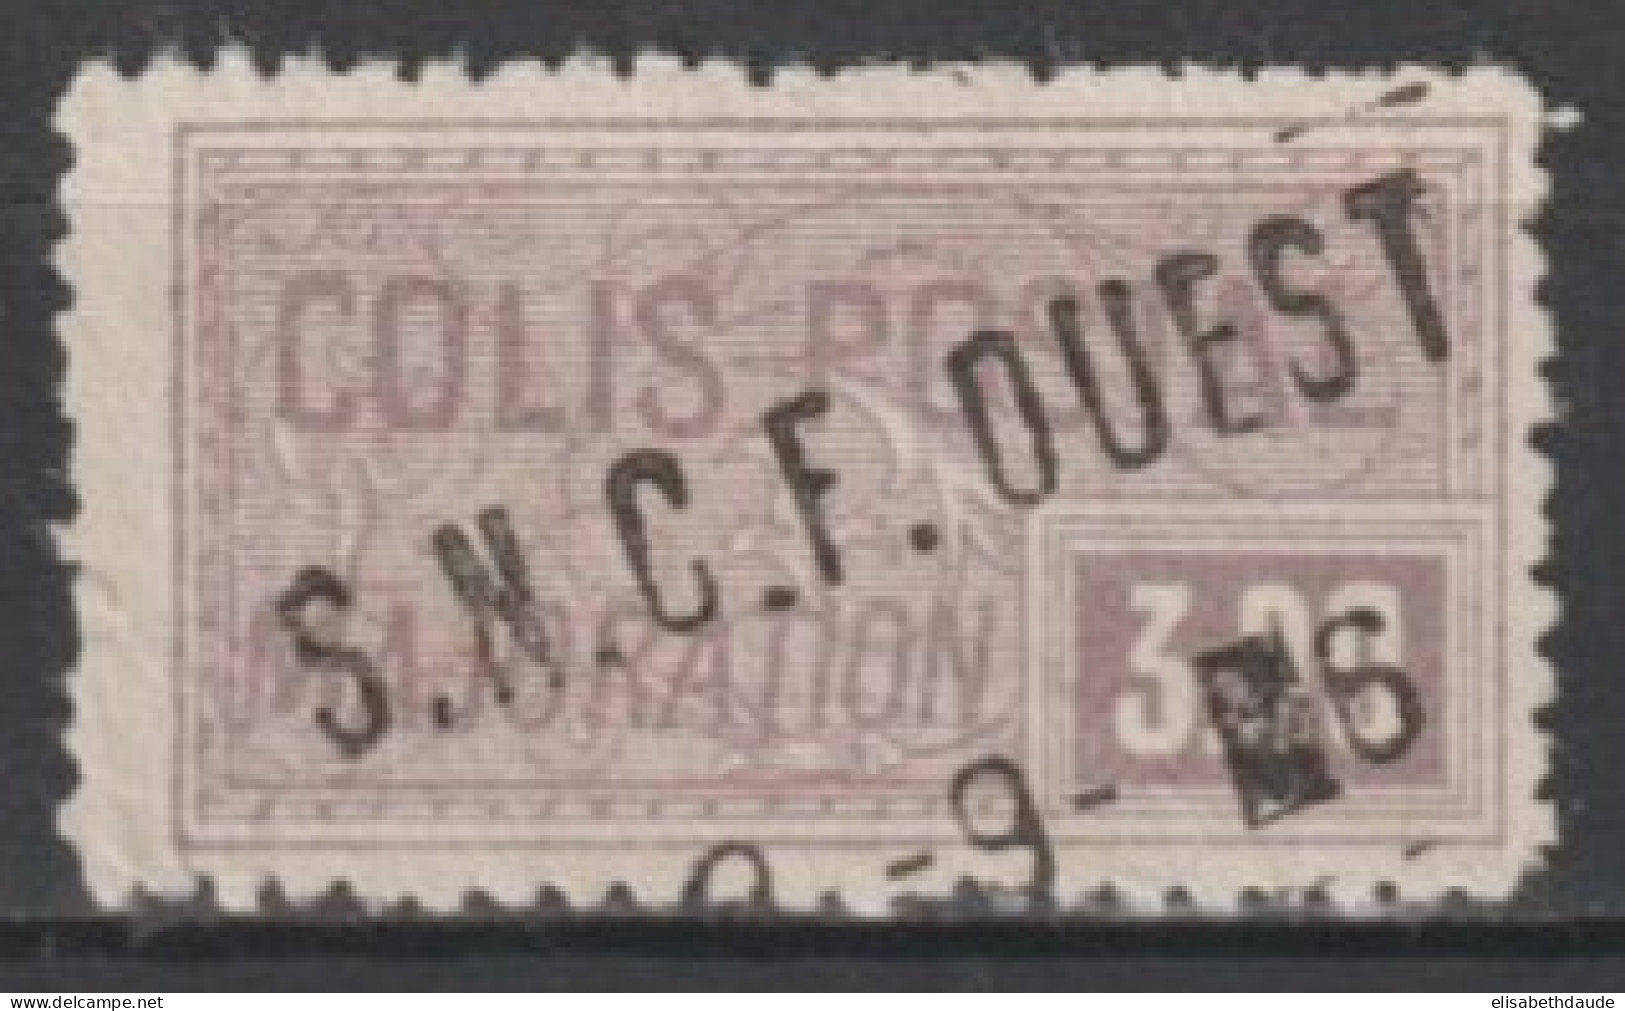 COLIS POSTAUX - 1926 - RARE YVERT N°80 OBLITERE - COTE = 90 EUR. - Oblitérés